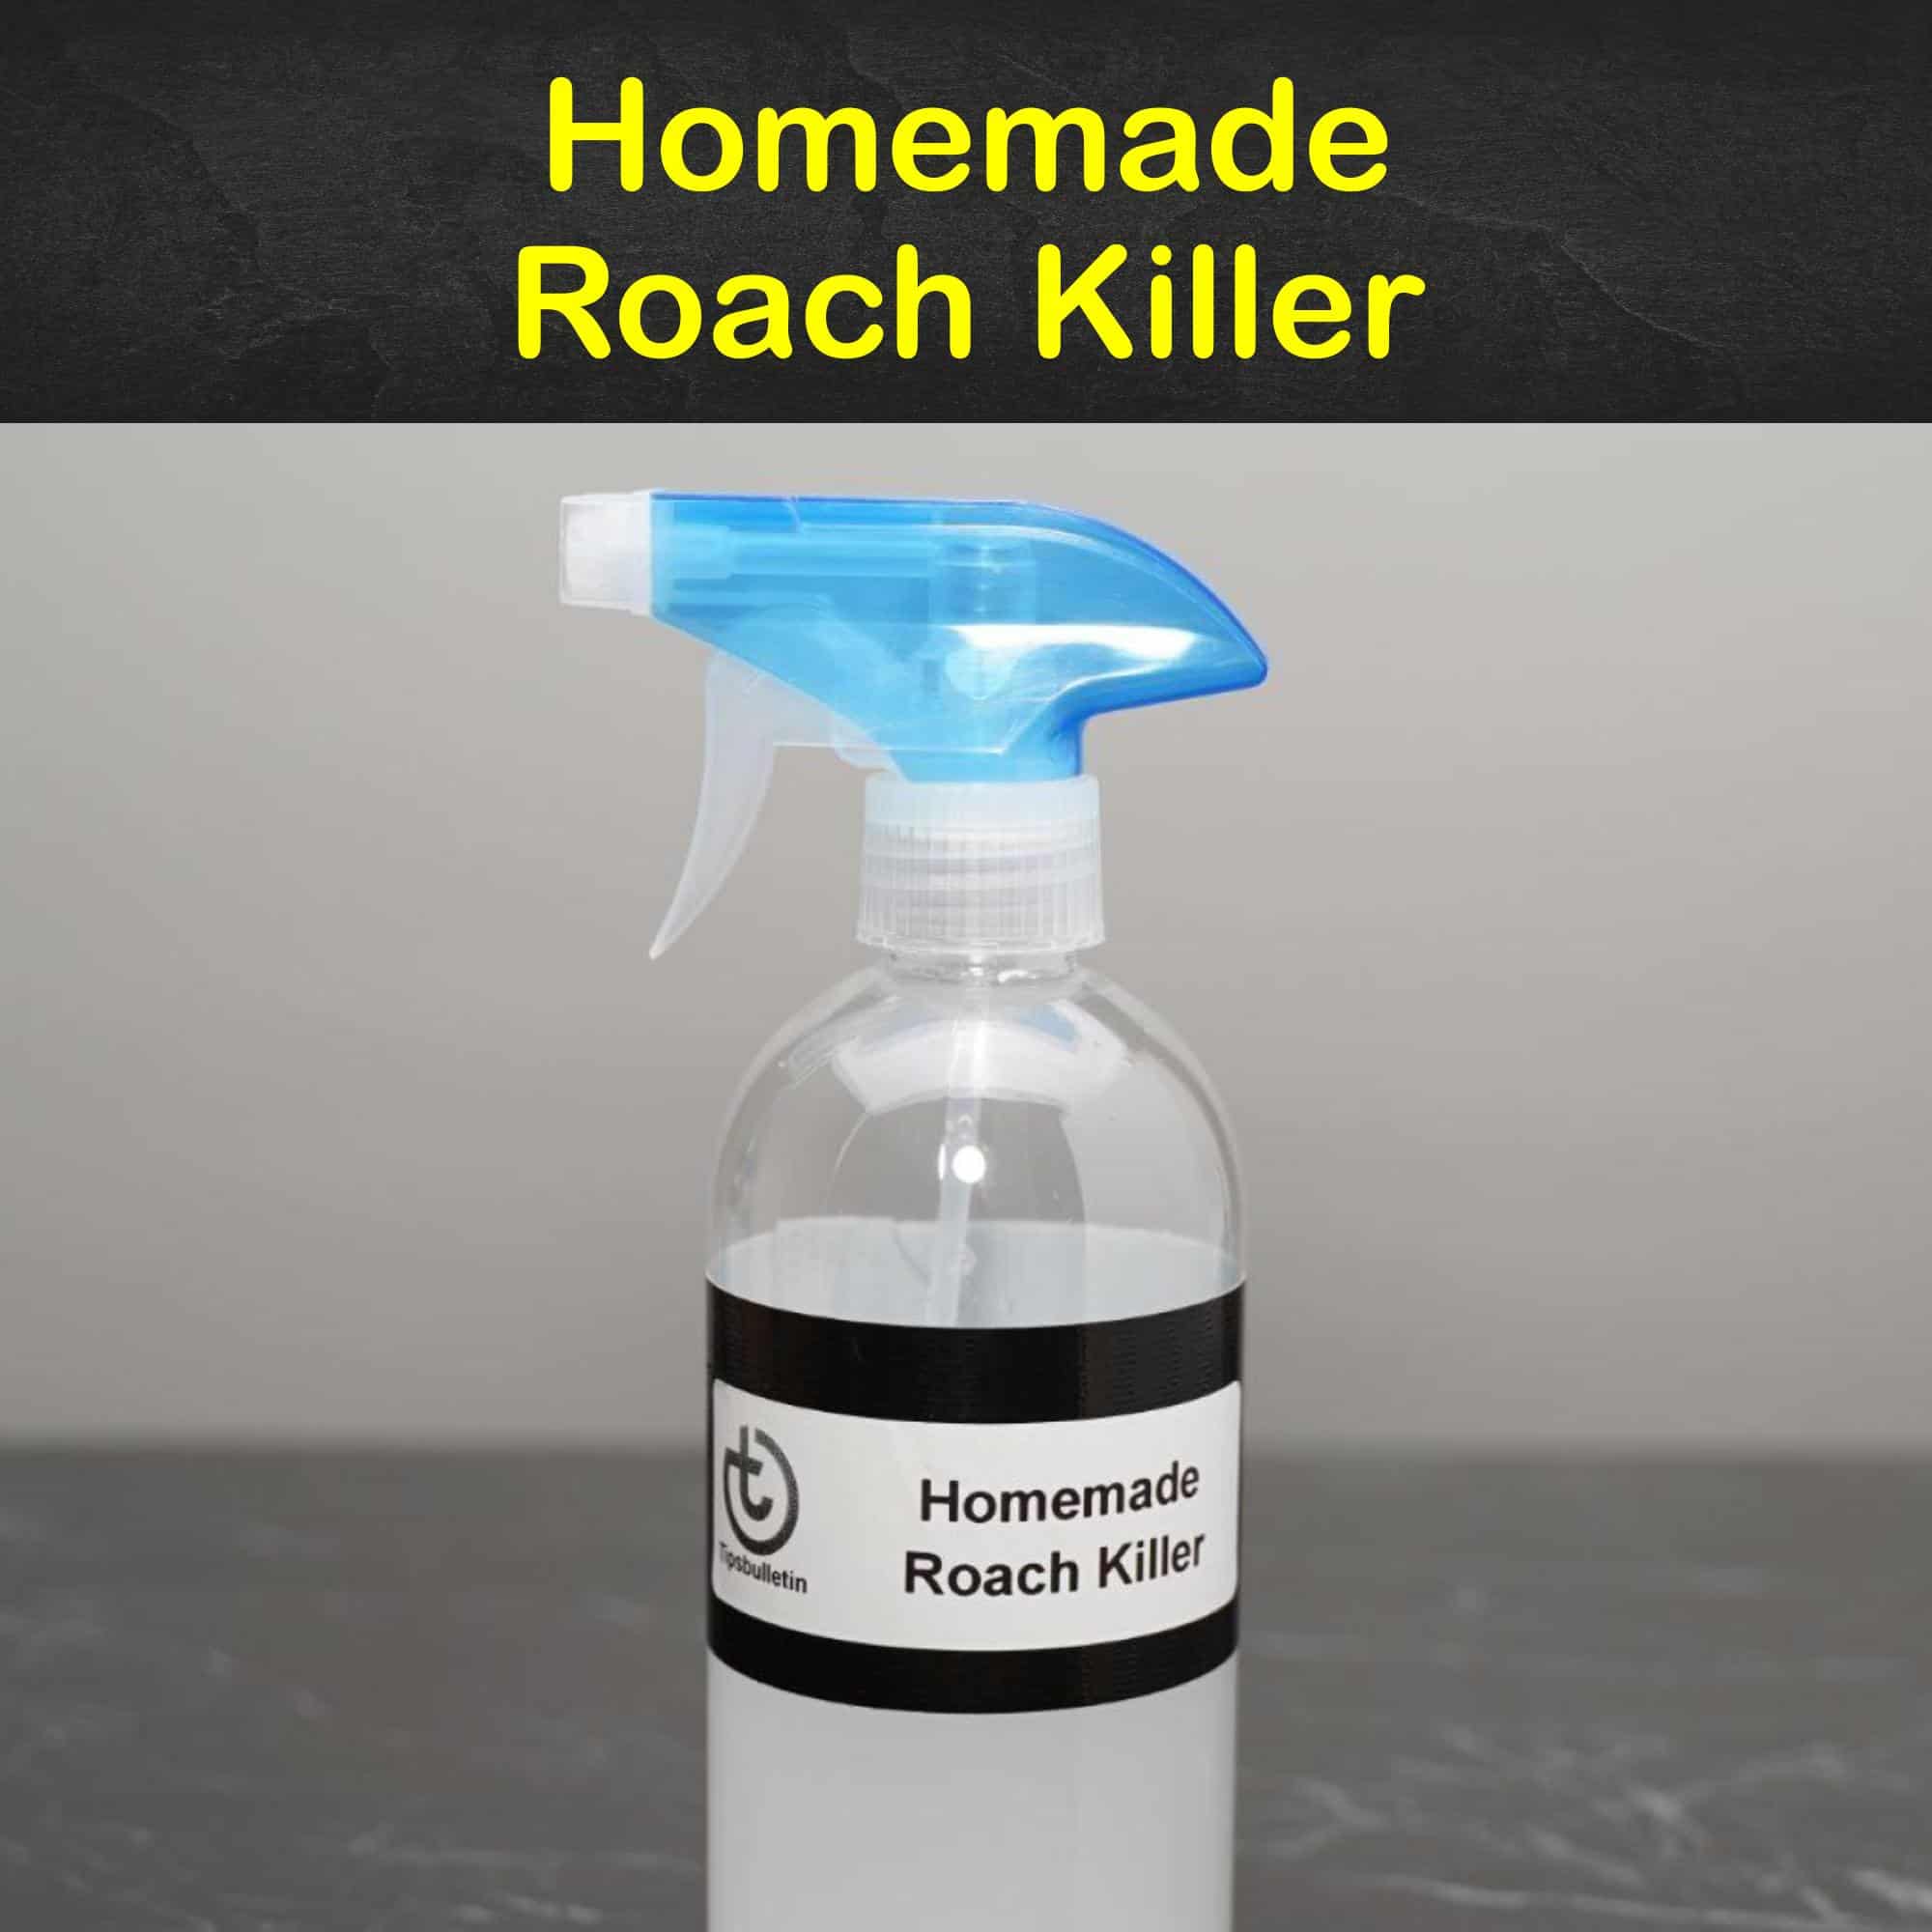 Homemade Roach Killer